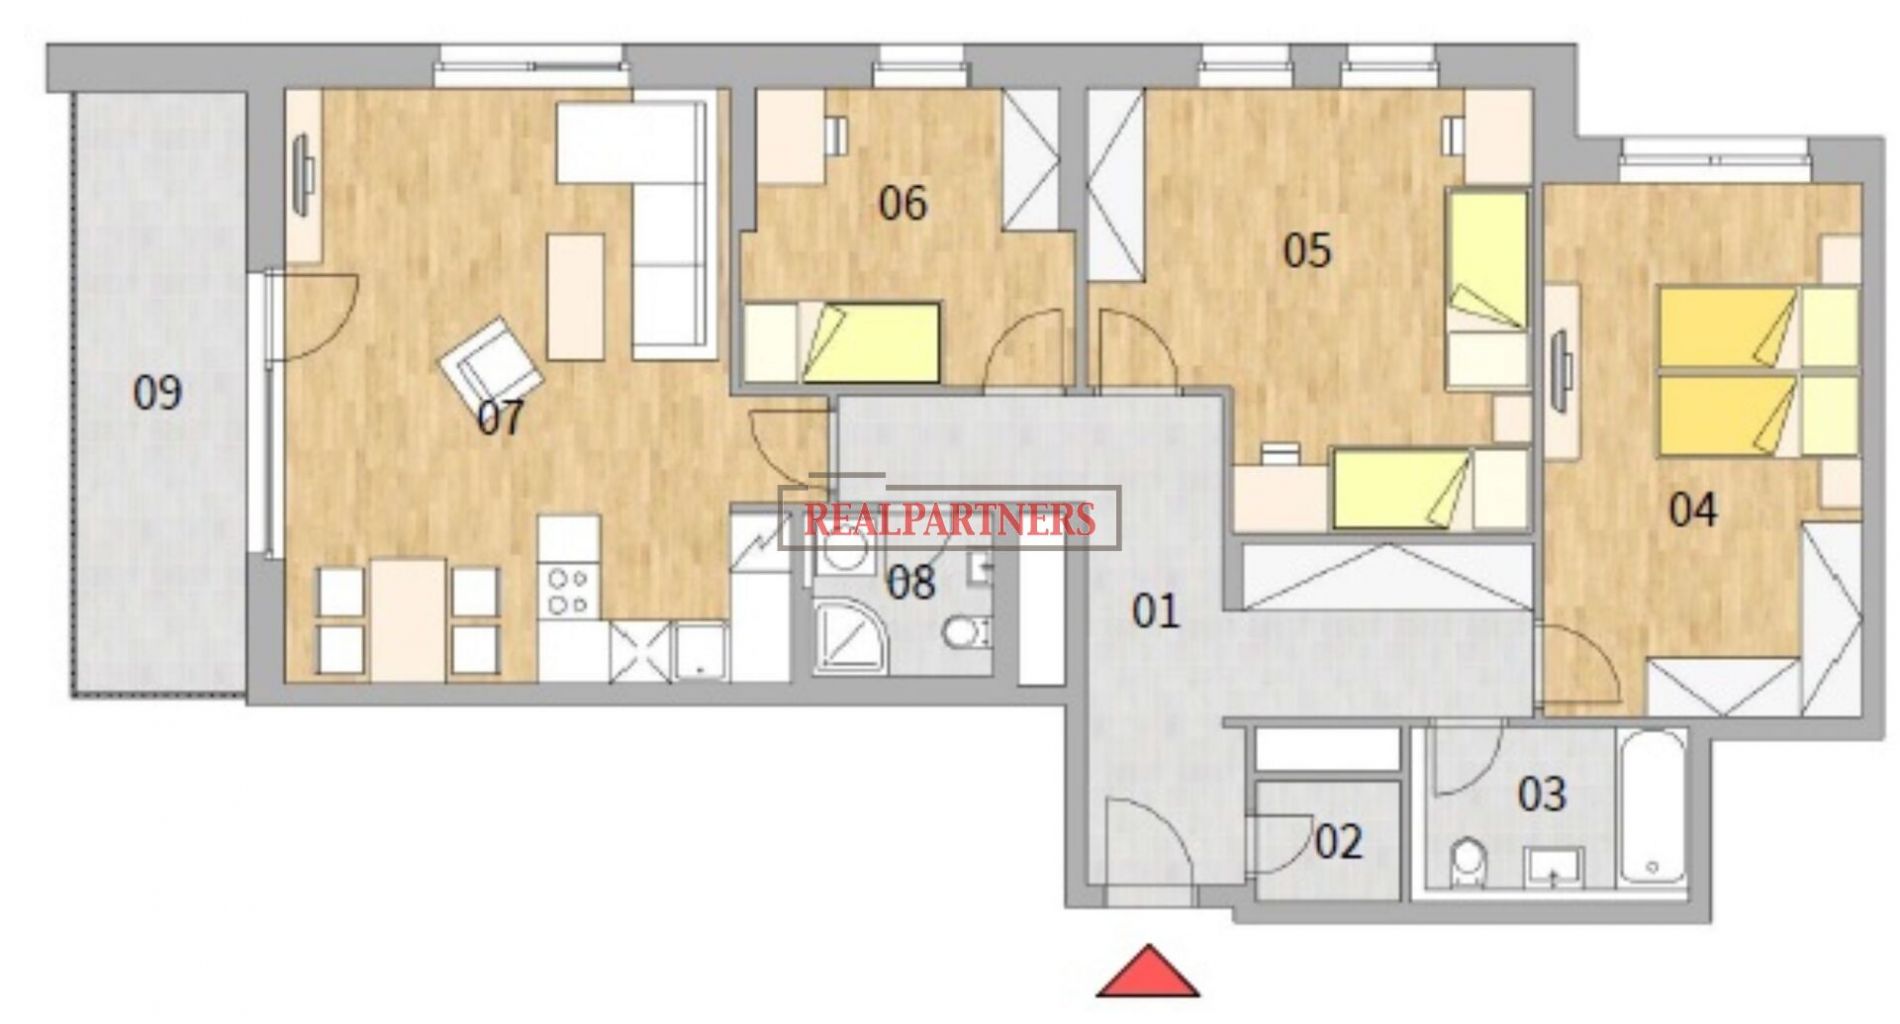 Nový byt 4+kk o ploše 111,4m2 + 12,1m2 balkon s přímým výhledem k Vltavě na západ., obrázek č. 2